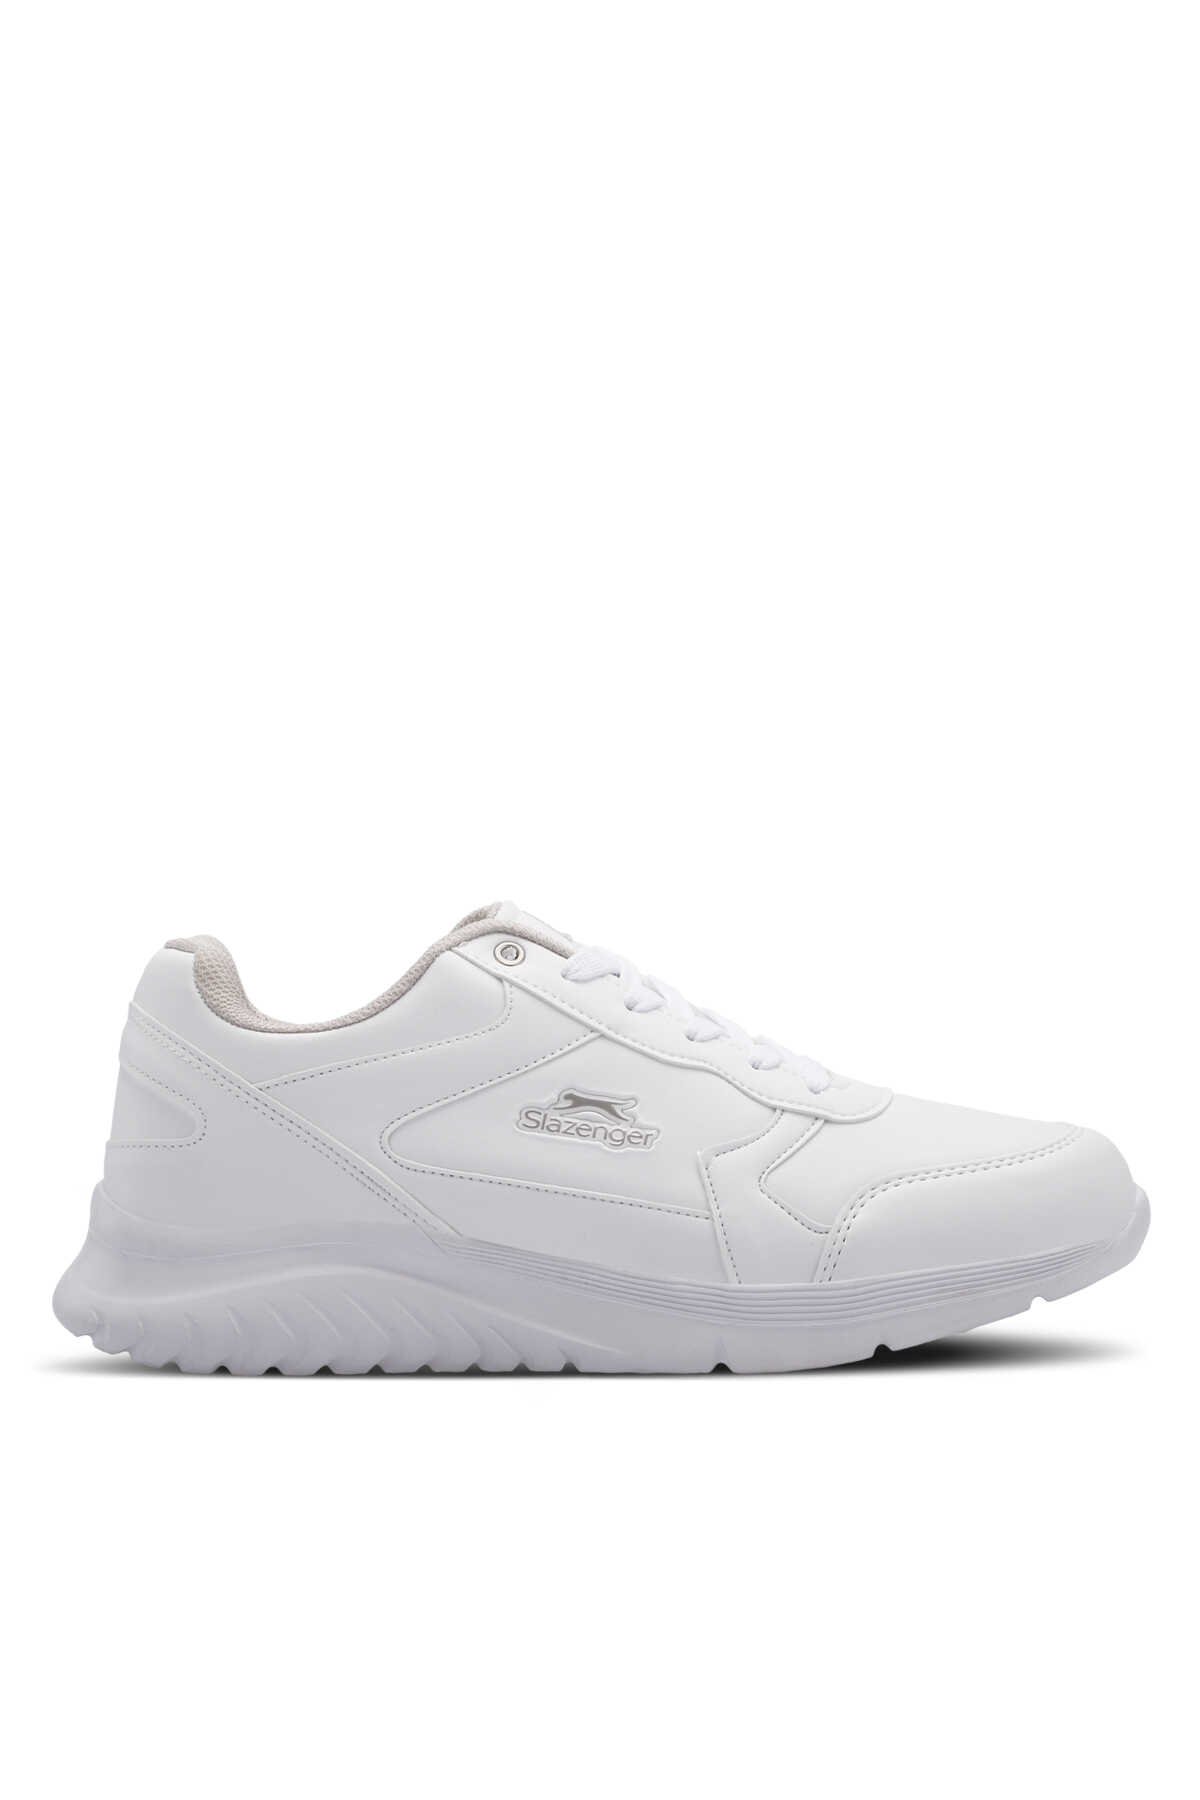 Slazenger - Slazenger MASTER I Erkek Sneaker Ayakkabı Beyaz / Beyaz